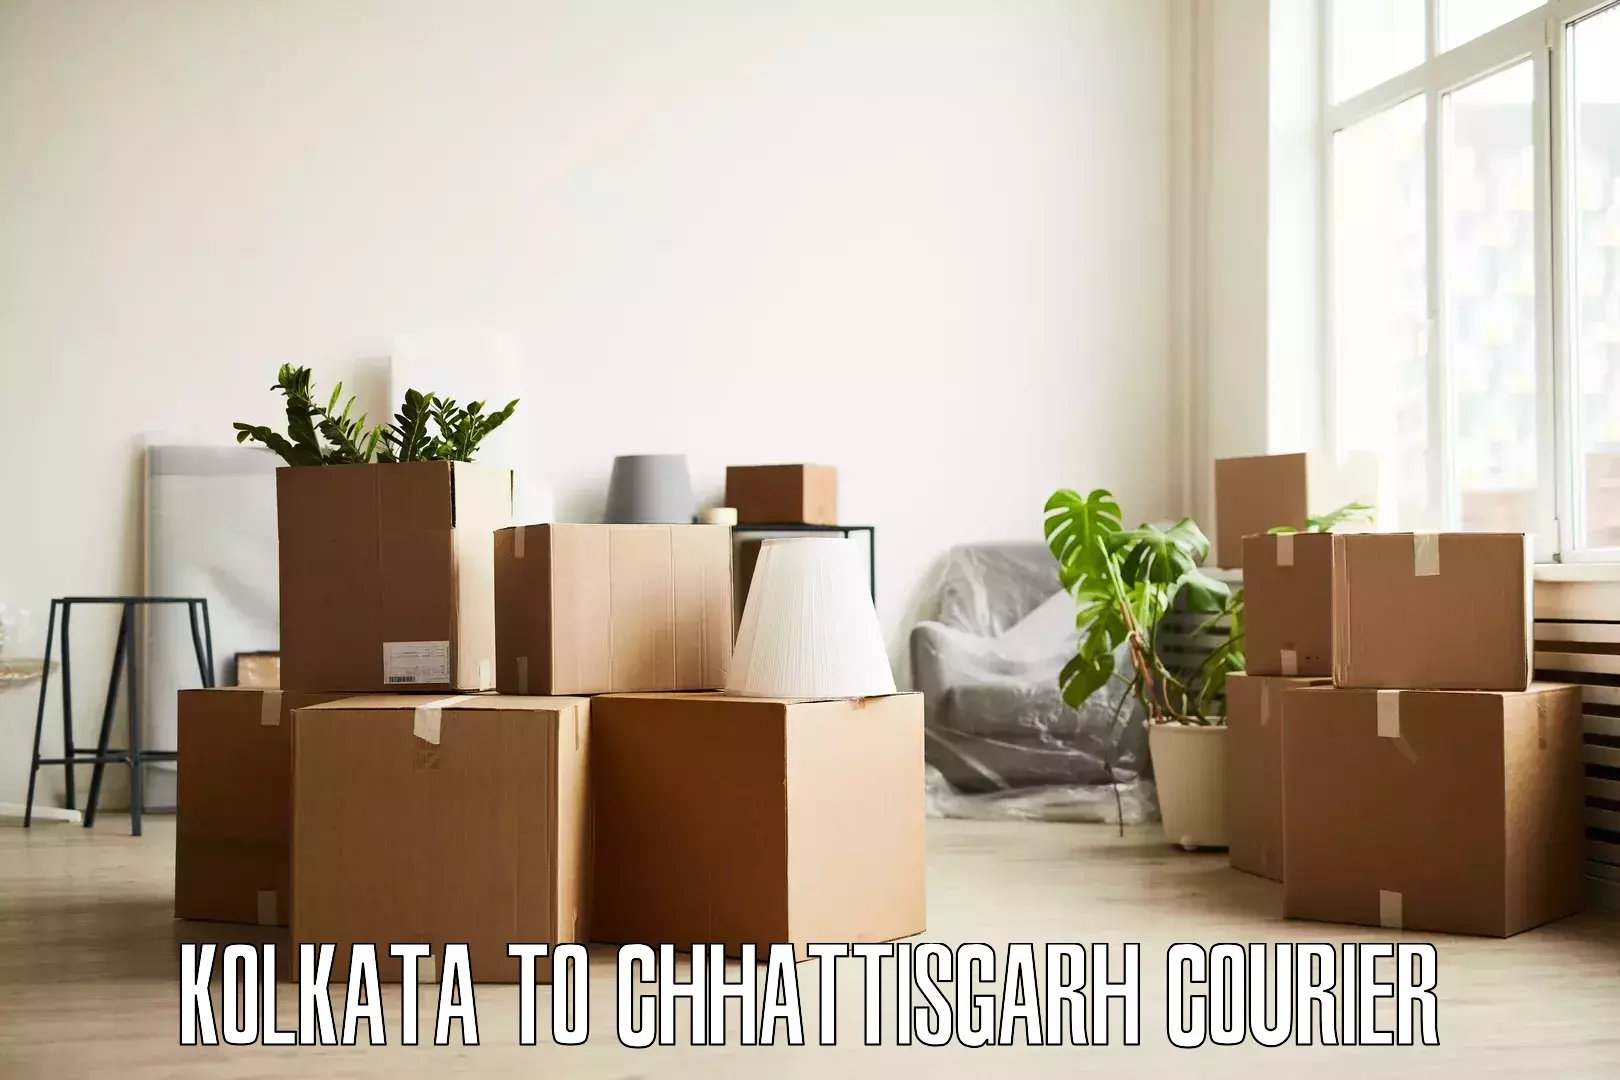 Furniture moving assistance Kolkata to Patna Chhattisgarh